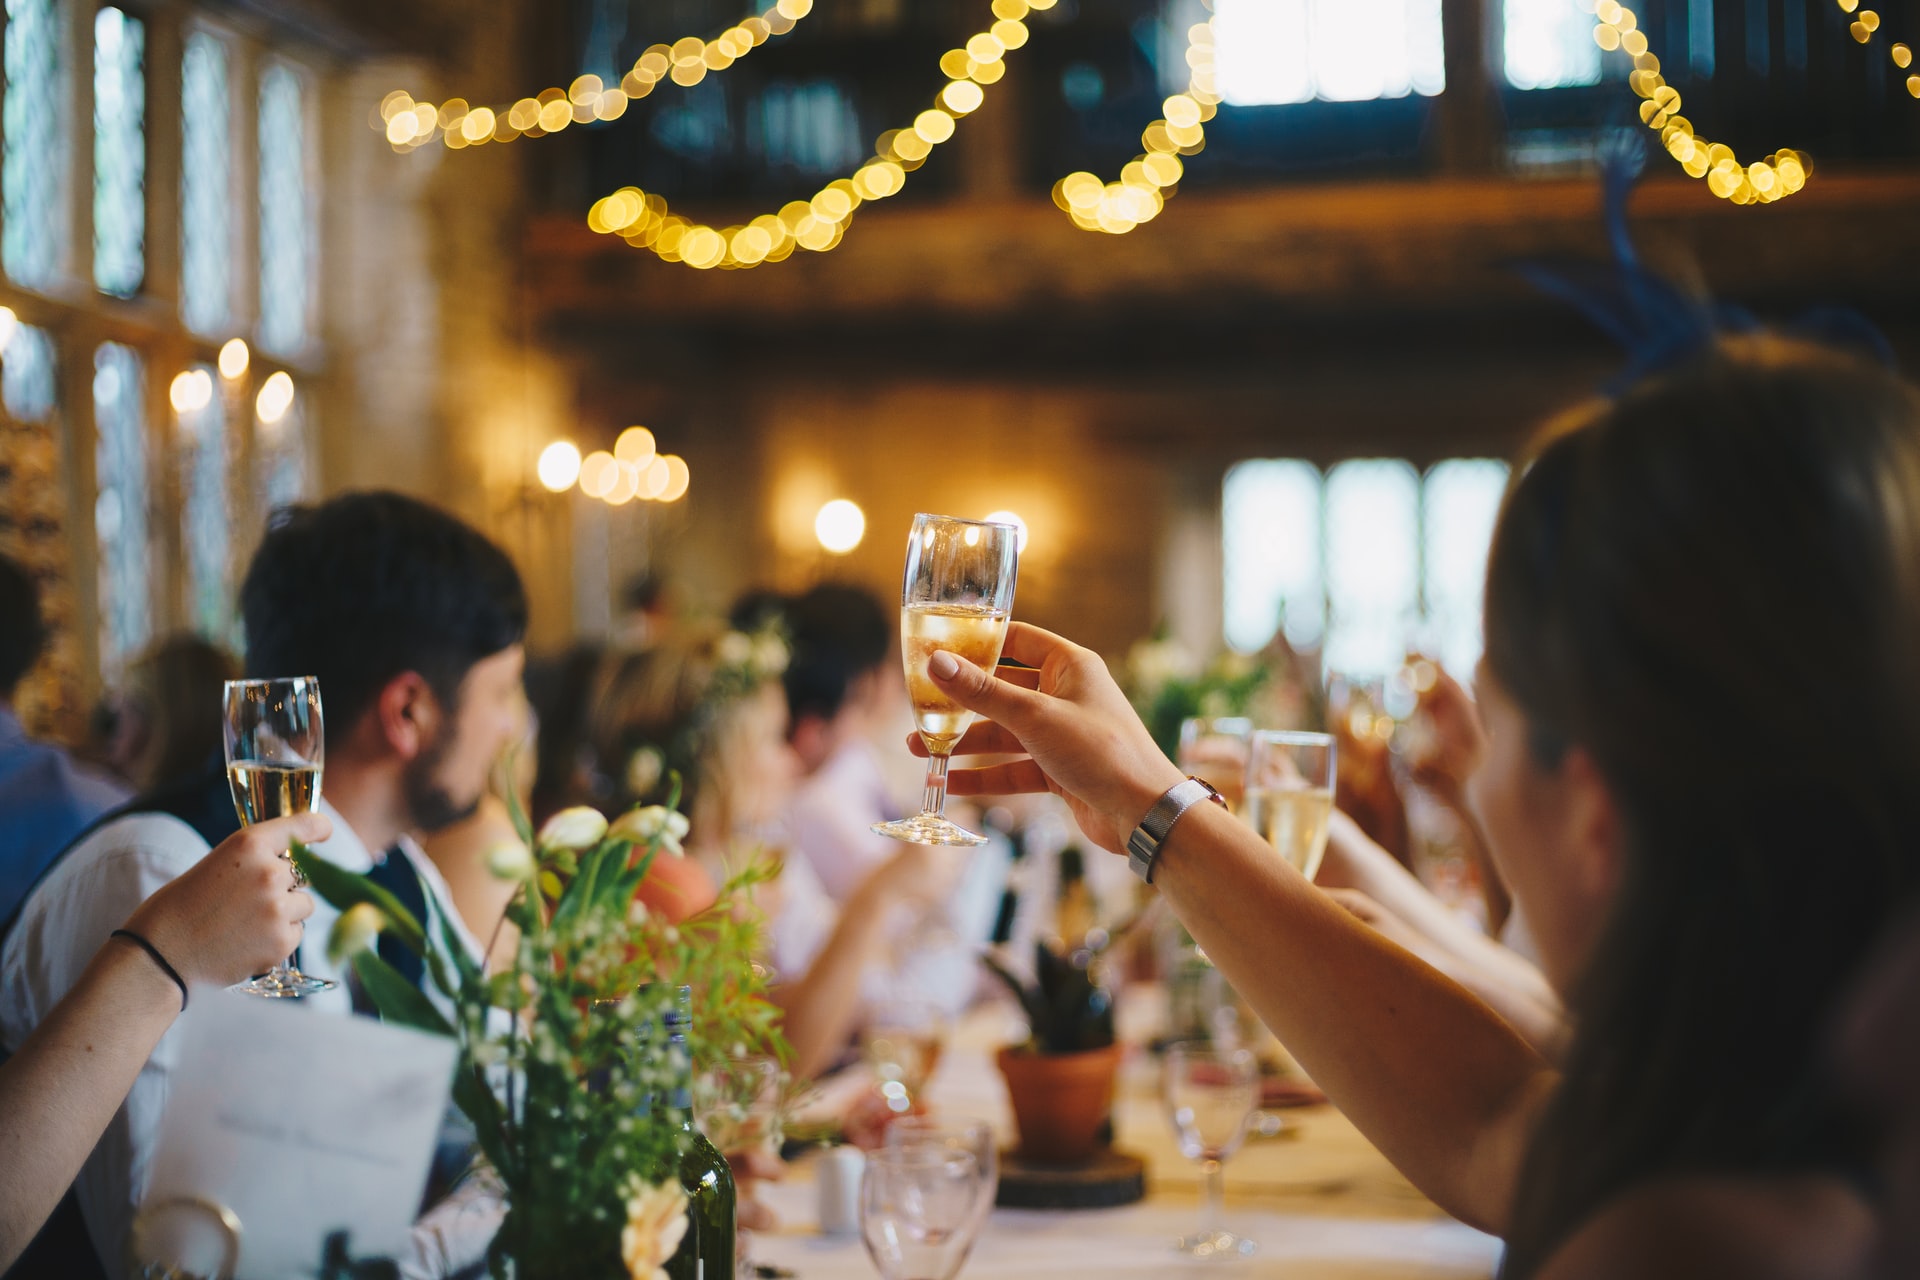 Comment faire un beau discours de mariage qui touchera tous les invités ?